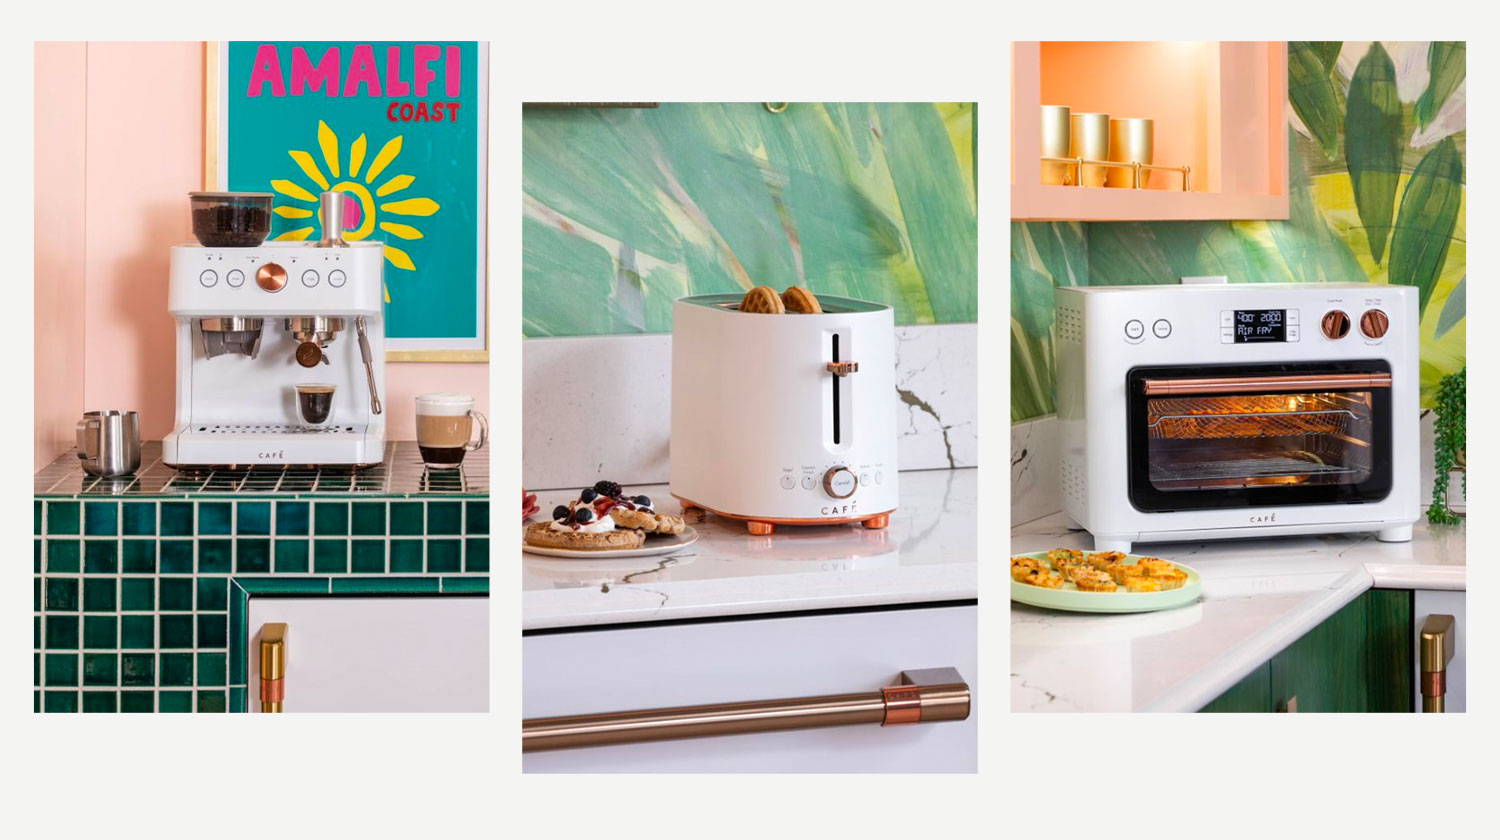 Closeups of Matte White Espresso Machine, Toaster, and Countertop Oven